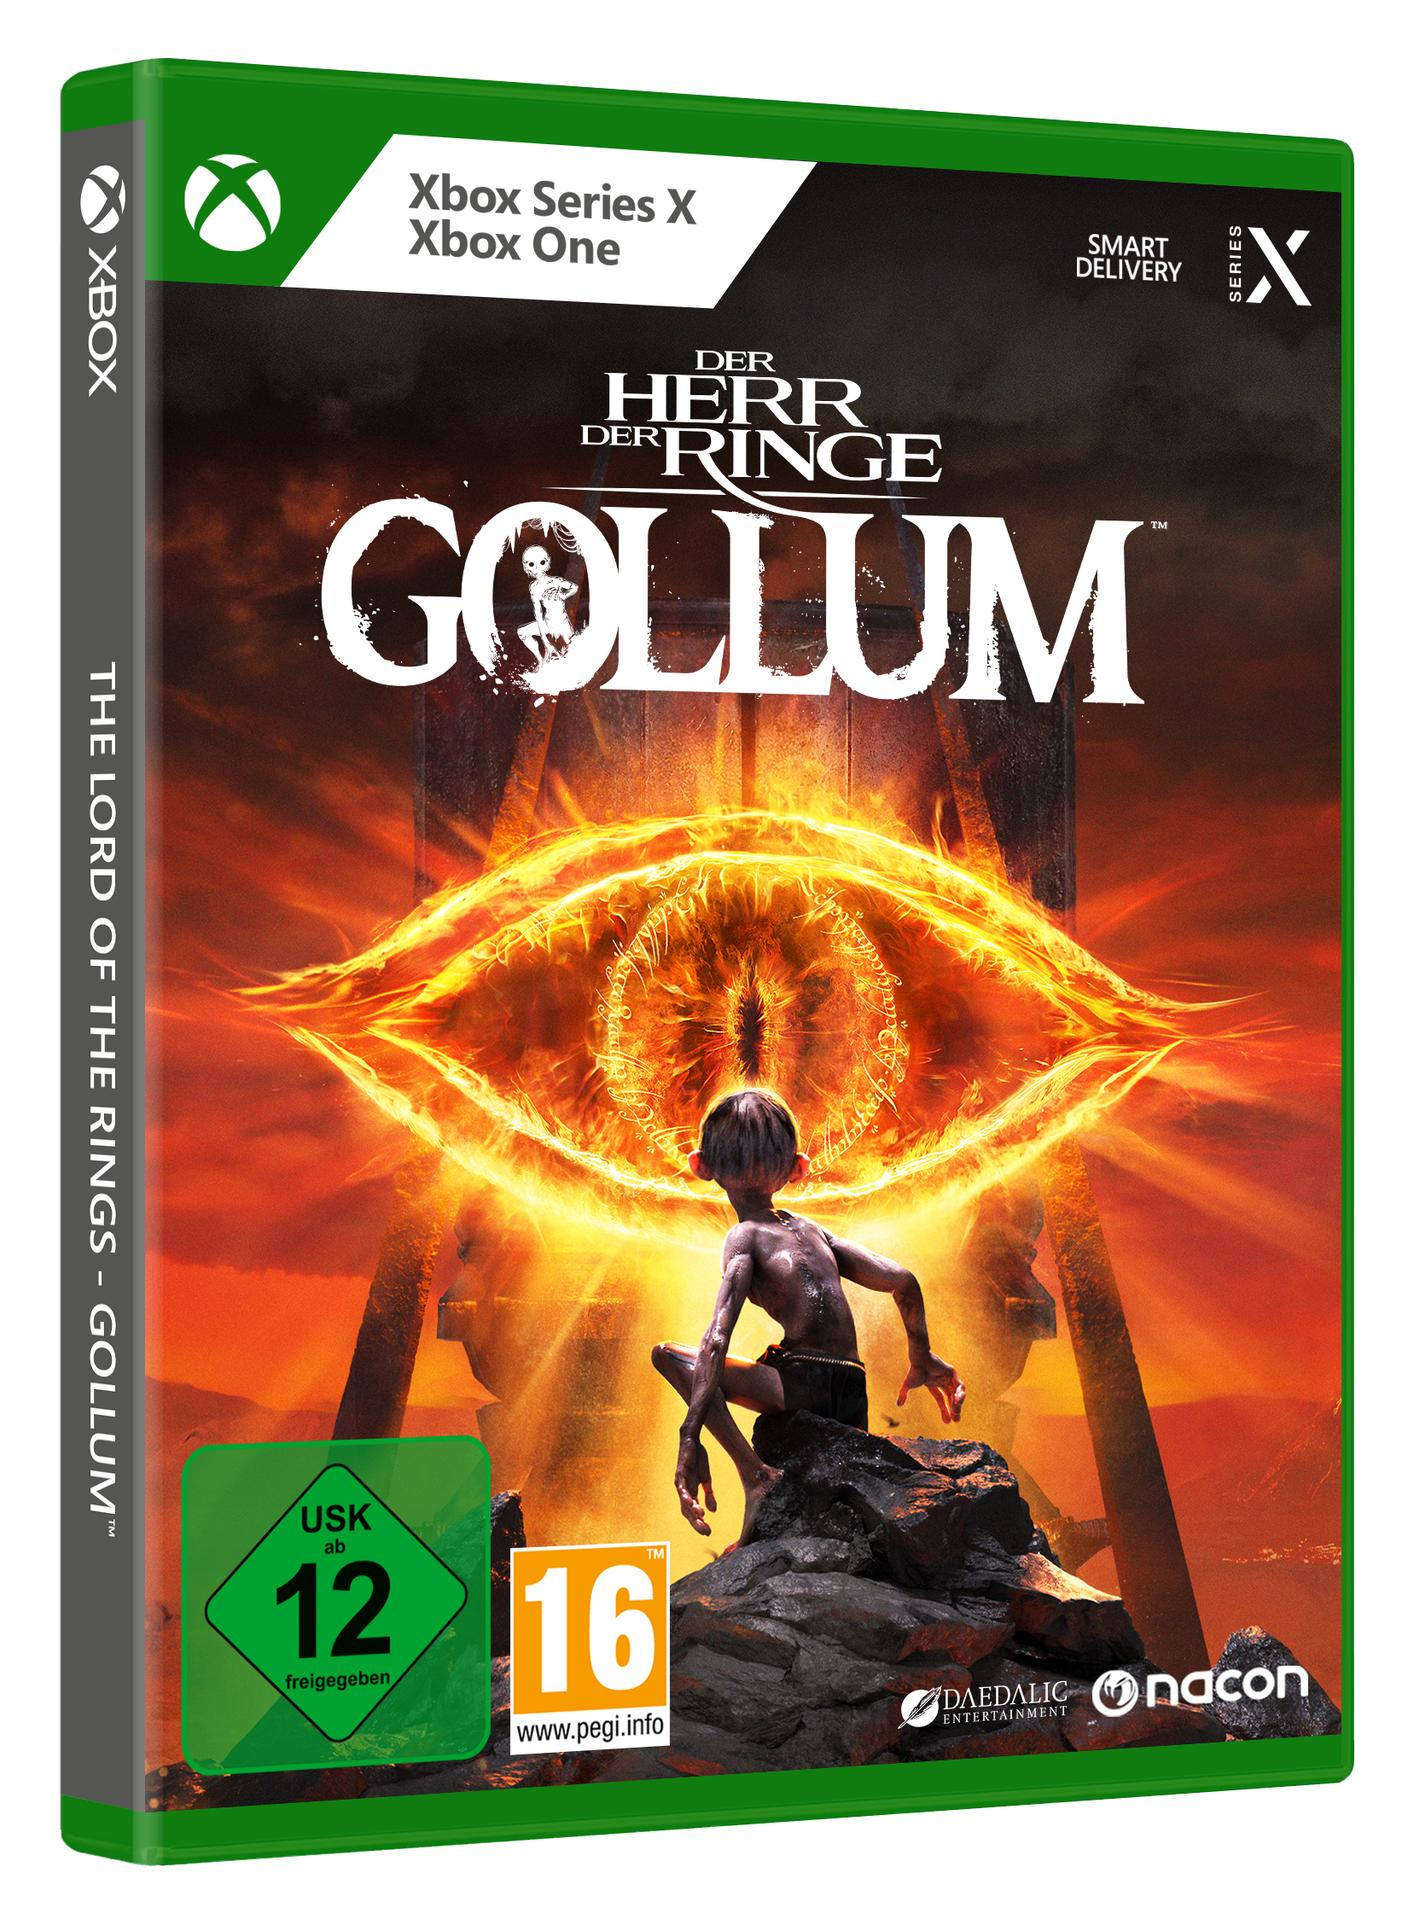 der Gollum & Ringe: One X] - Herr Xbox Der Series [Xbox